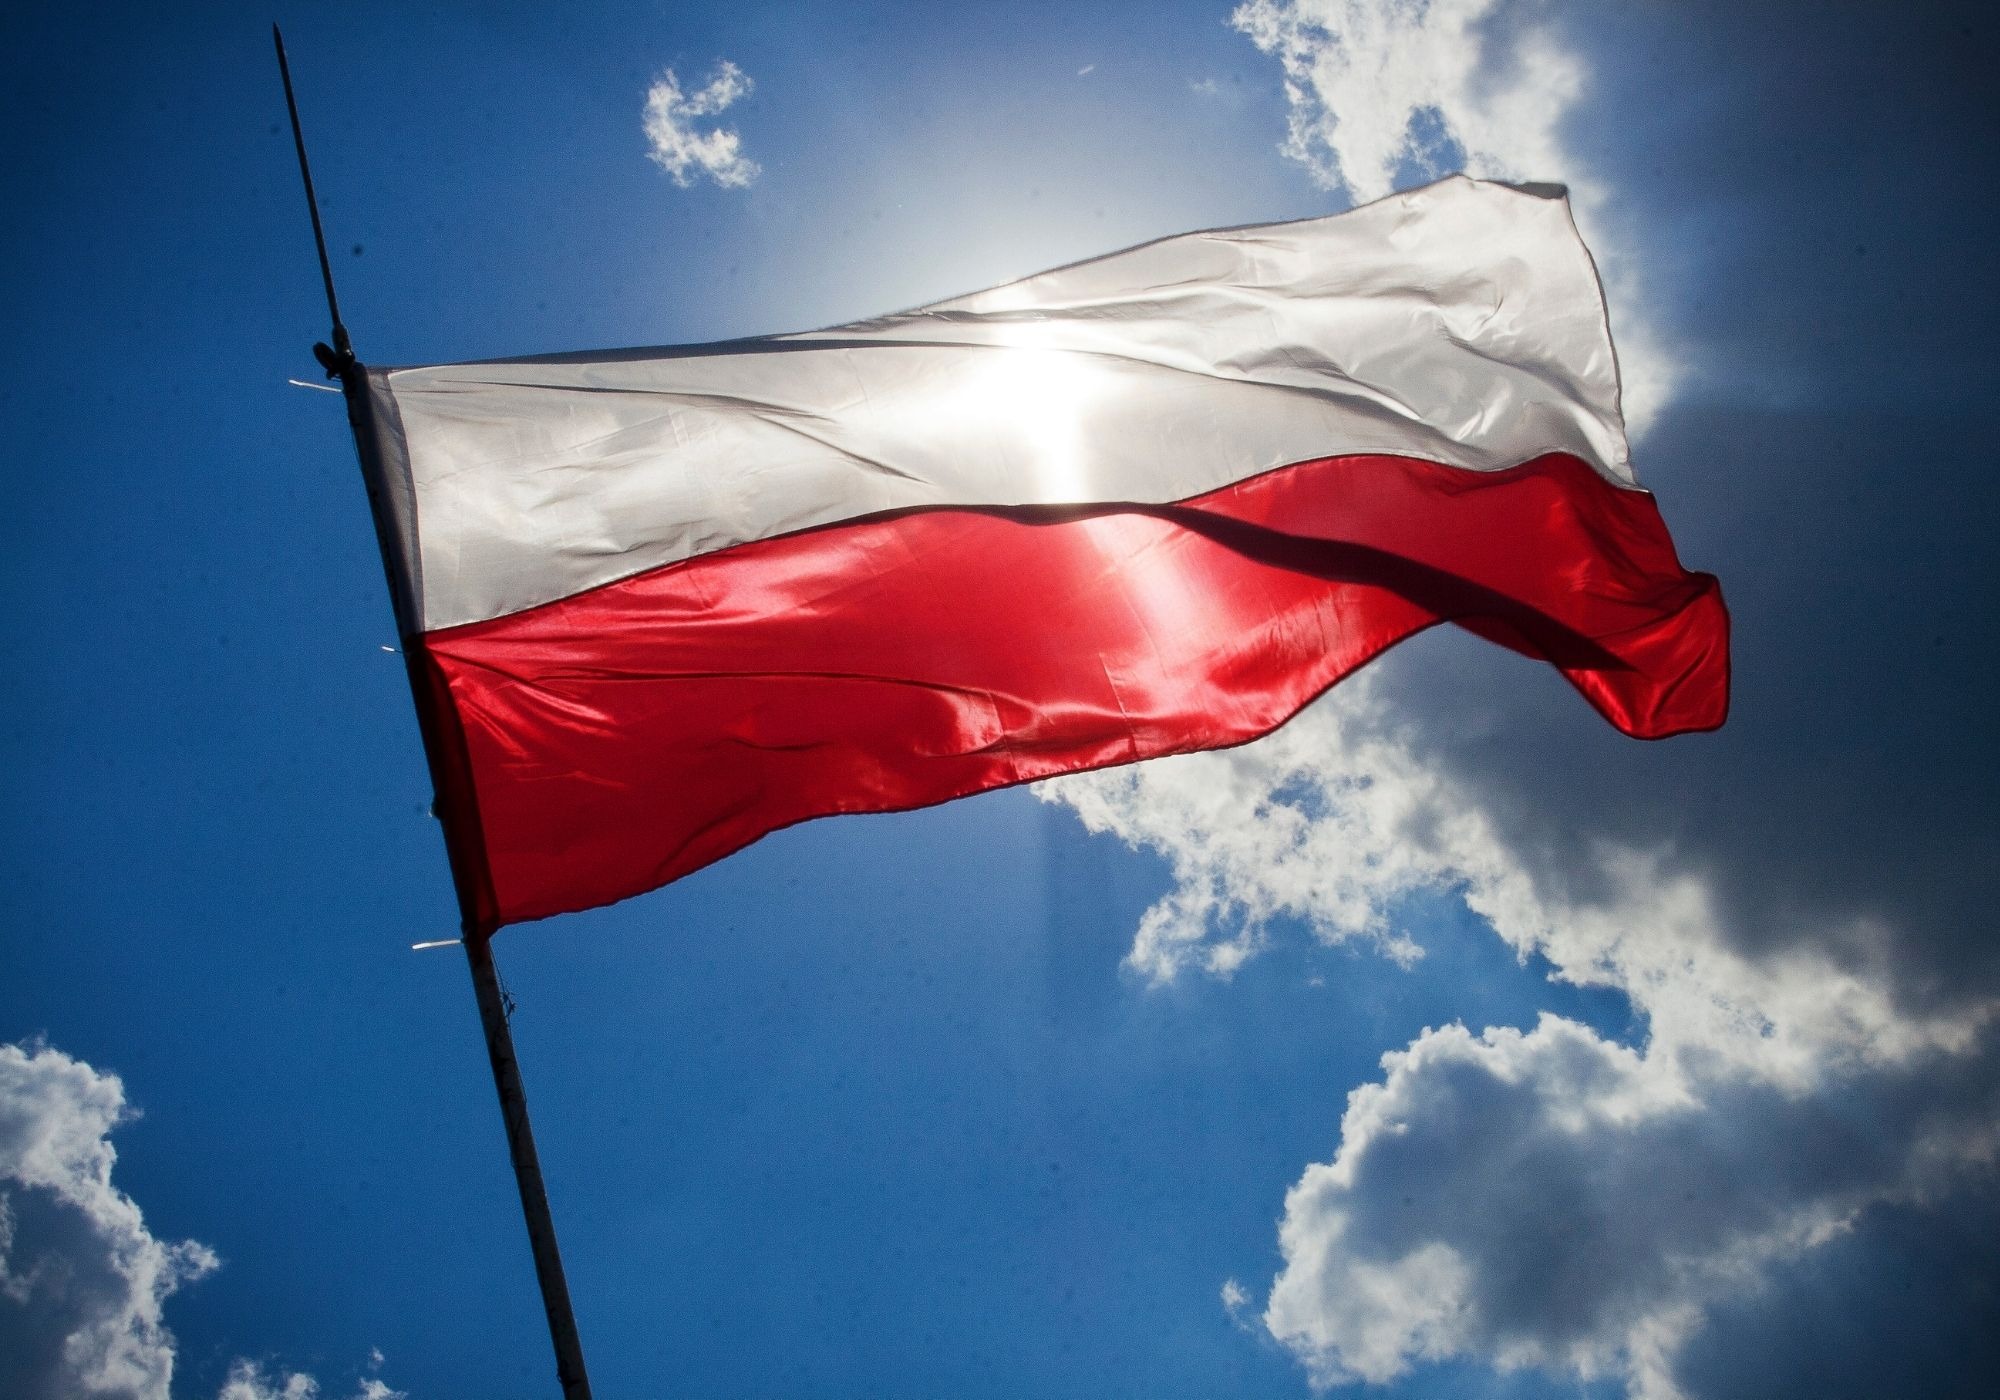 flaga polski co warto wiedziec o barwach wymiarach i ekspozycji flagi c21f